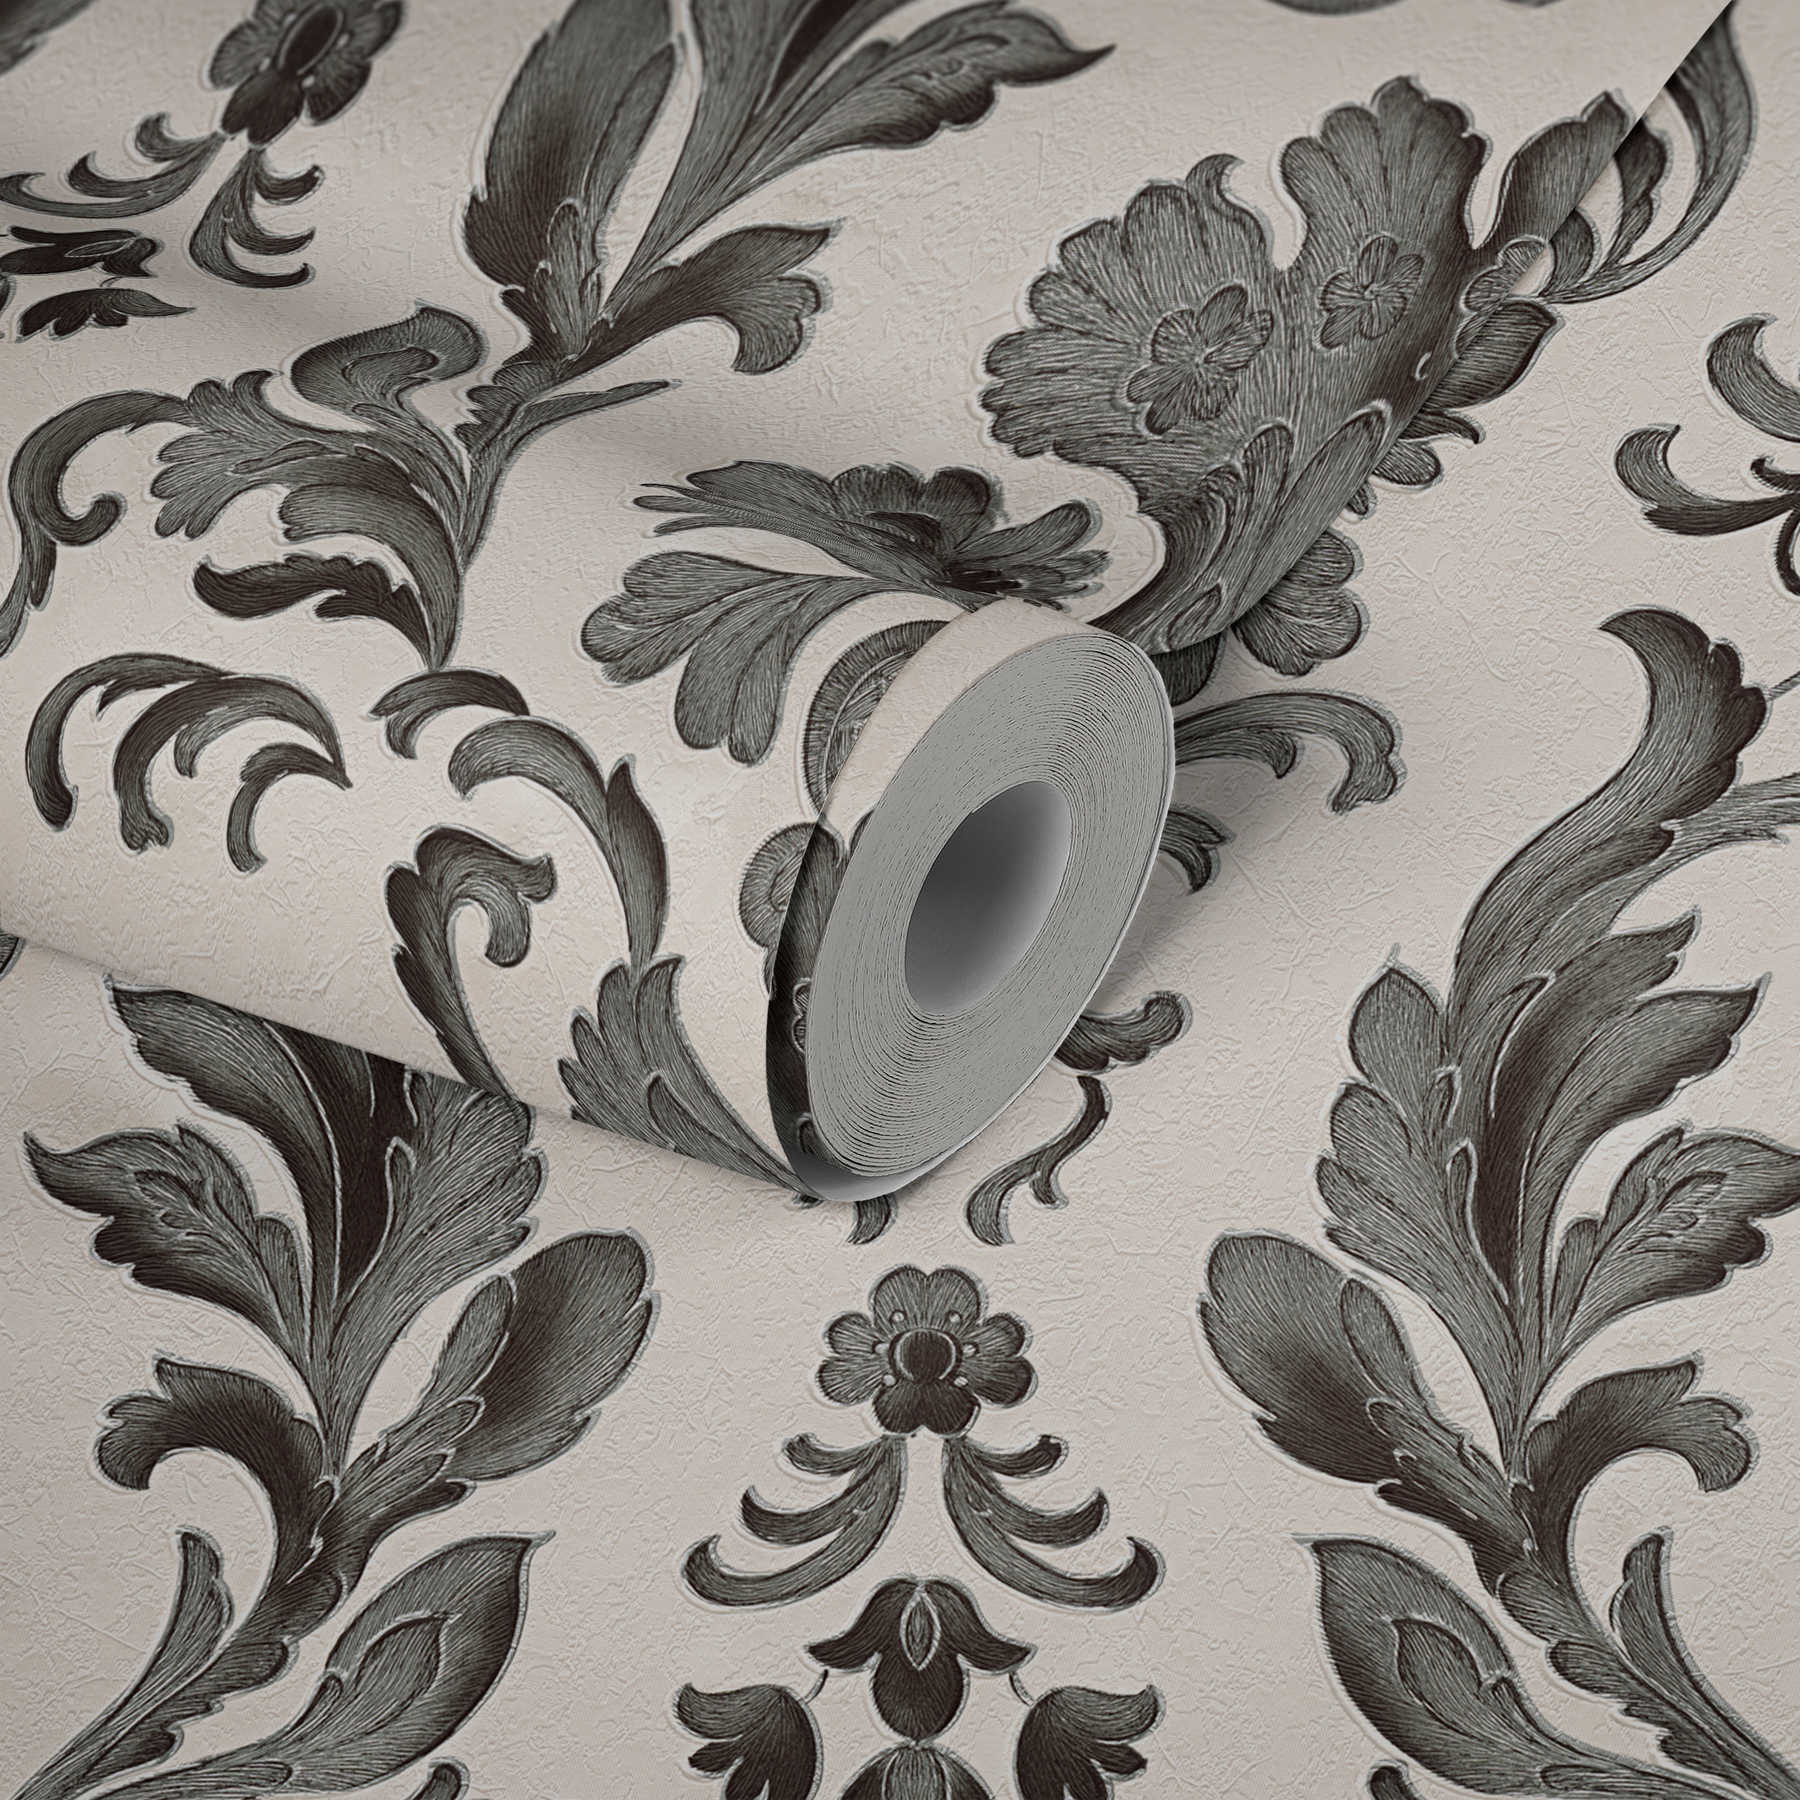             Papel pintado con adornos detallados en estilo floral - Negro, Blanco
        